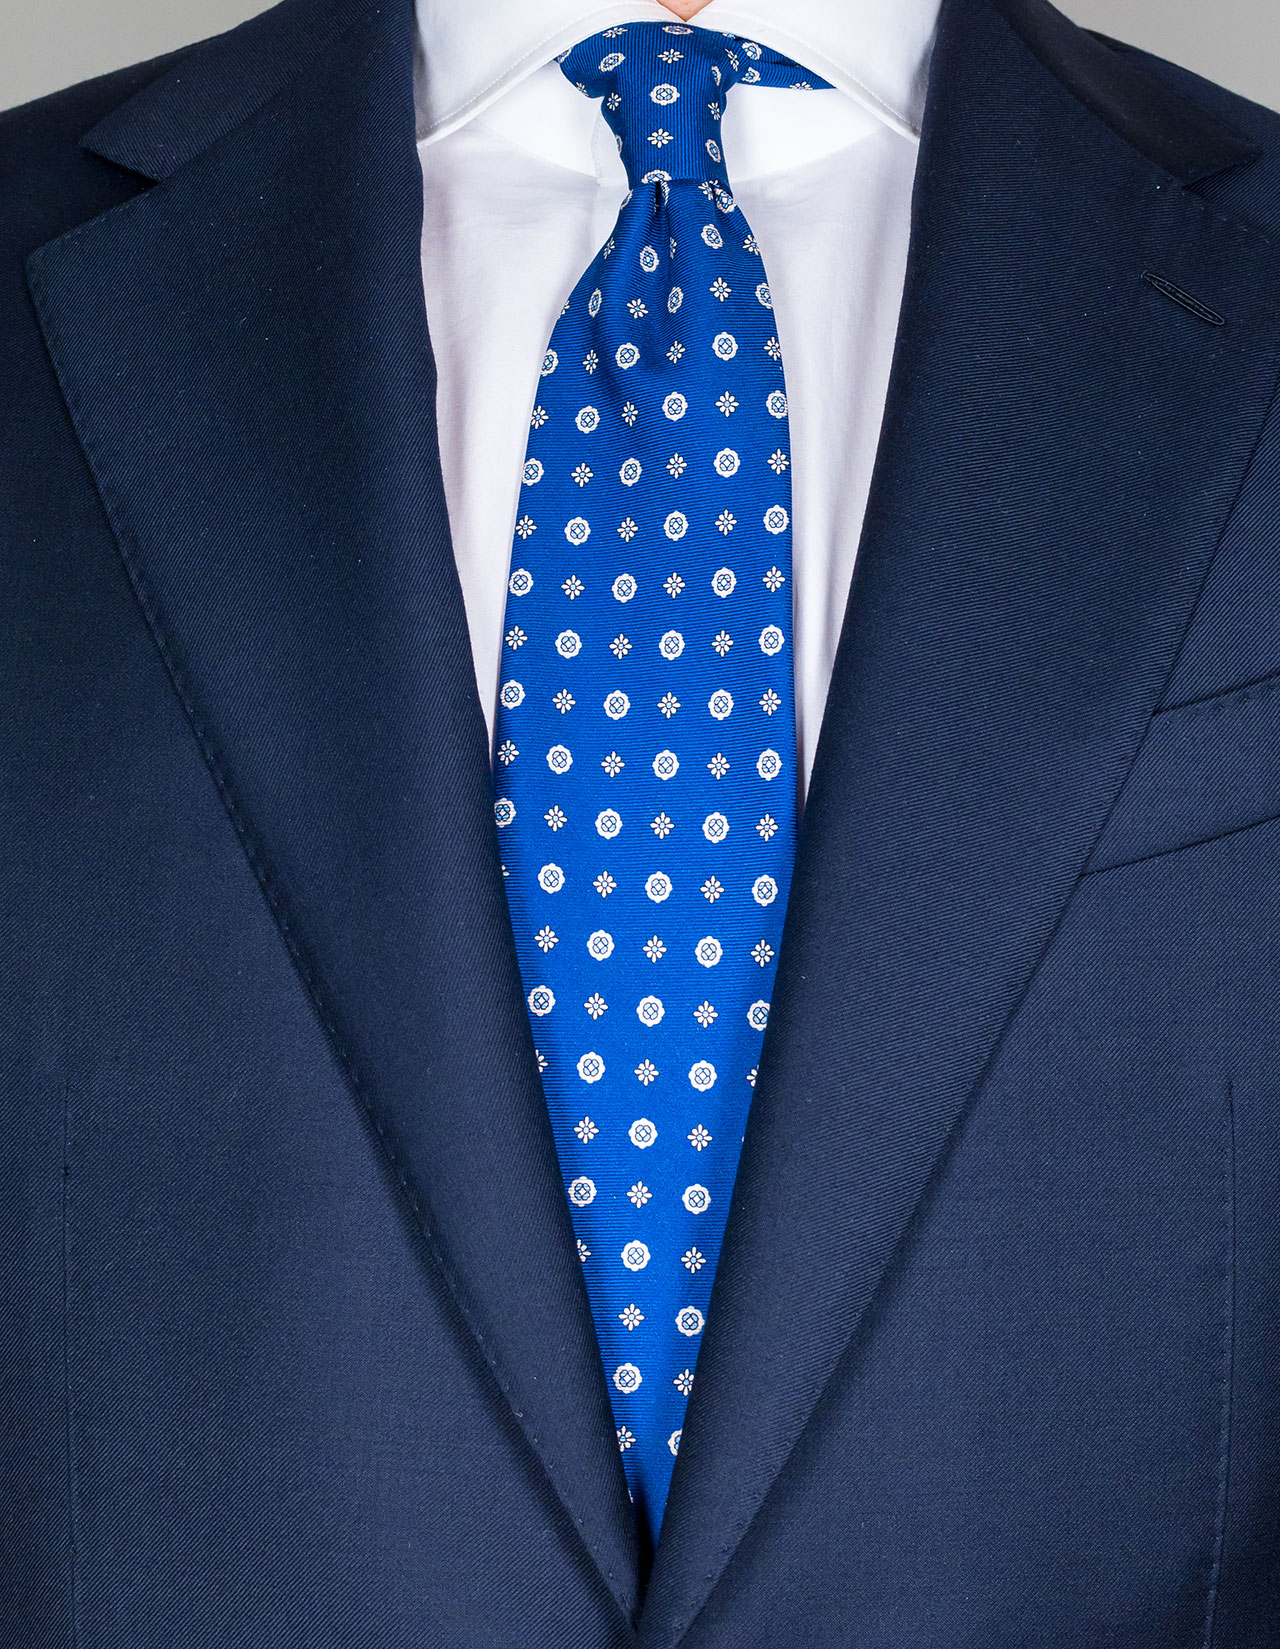 Luigi Borrelli Krawatte in blau mit hellblau/weißen Blumen